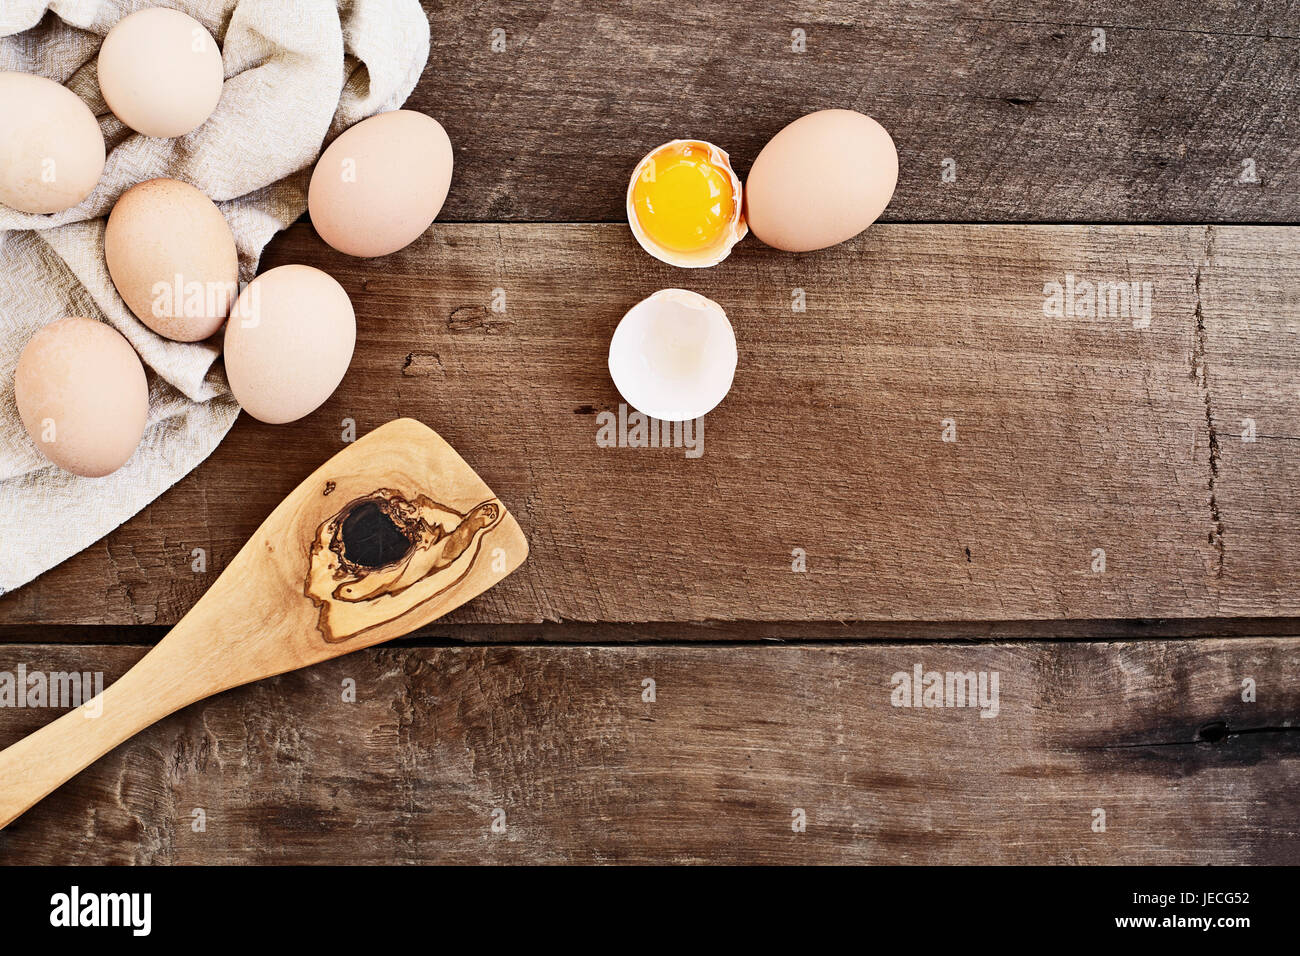 Orgánicos frescos de granja de huevos de pollo marrón Free Range pollos con un viejo olivo espátula antiguas de madera sobre un fondo de madera de estilo rústico. Un huevo agrietado Foto de stock